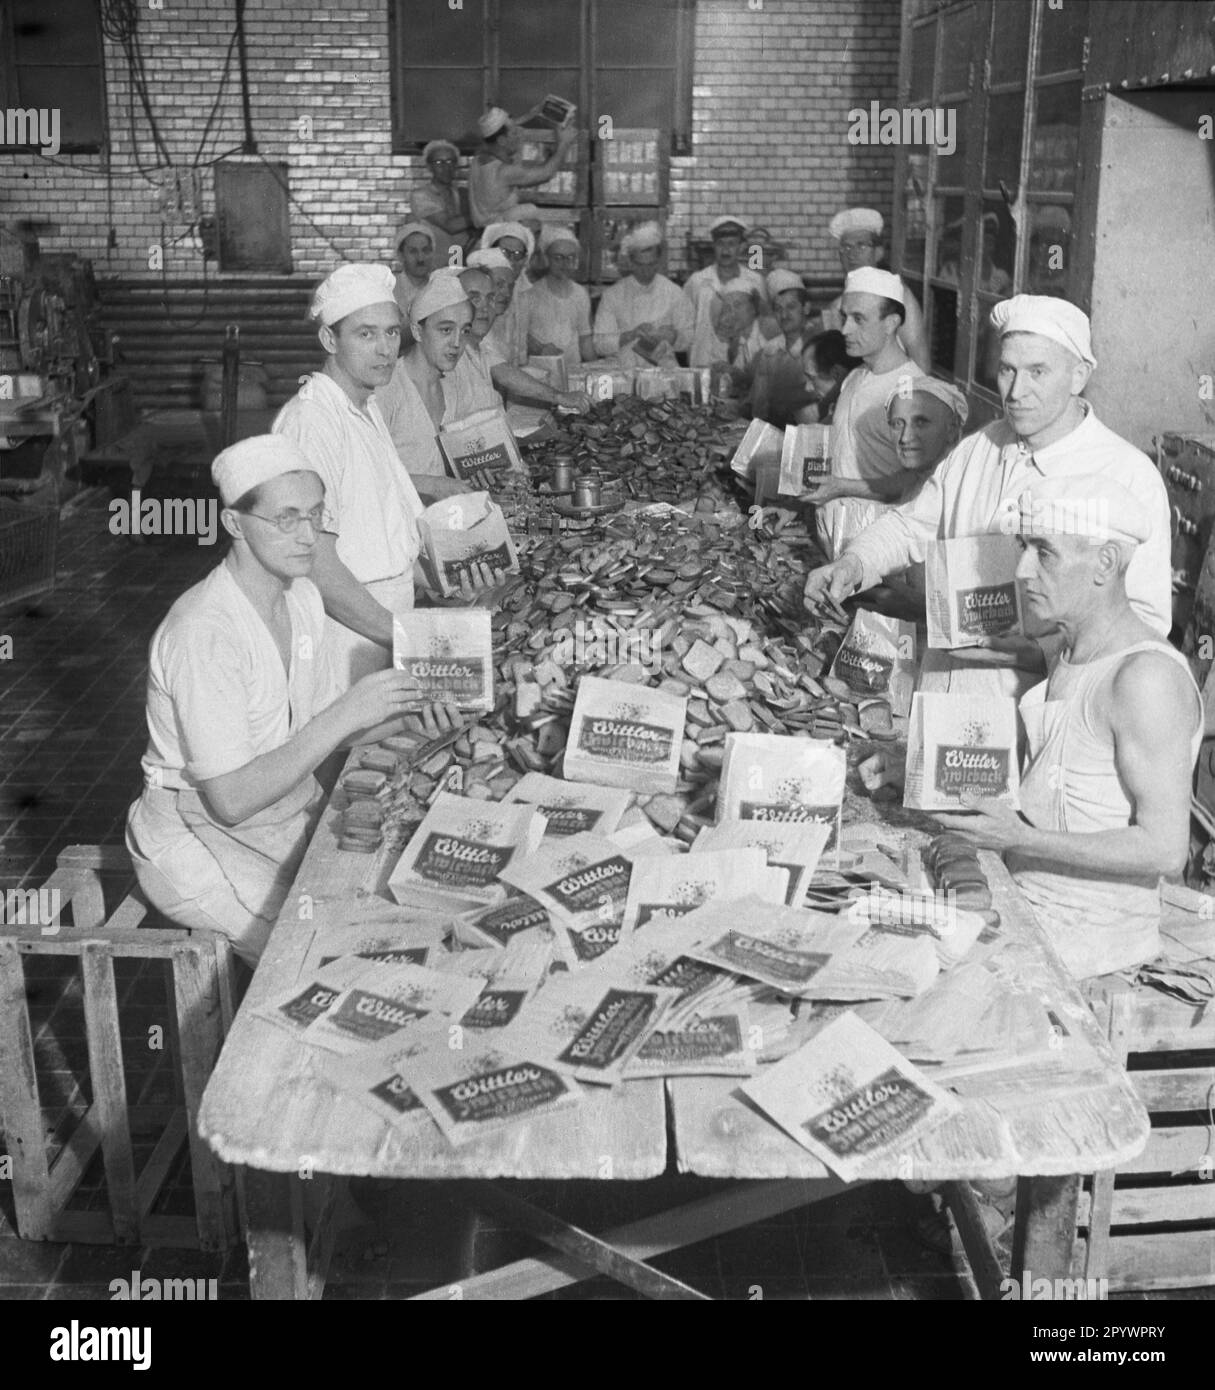 Mitarbeiter der Firma Wittler wickelten geschnittenes Brot in Papiertüten ein. Die Firma Wittler war nach dem Ersten Weltkrieg vorübergehend die größte Bäckerei in Europa. Stockfoto